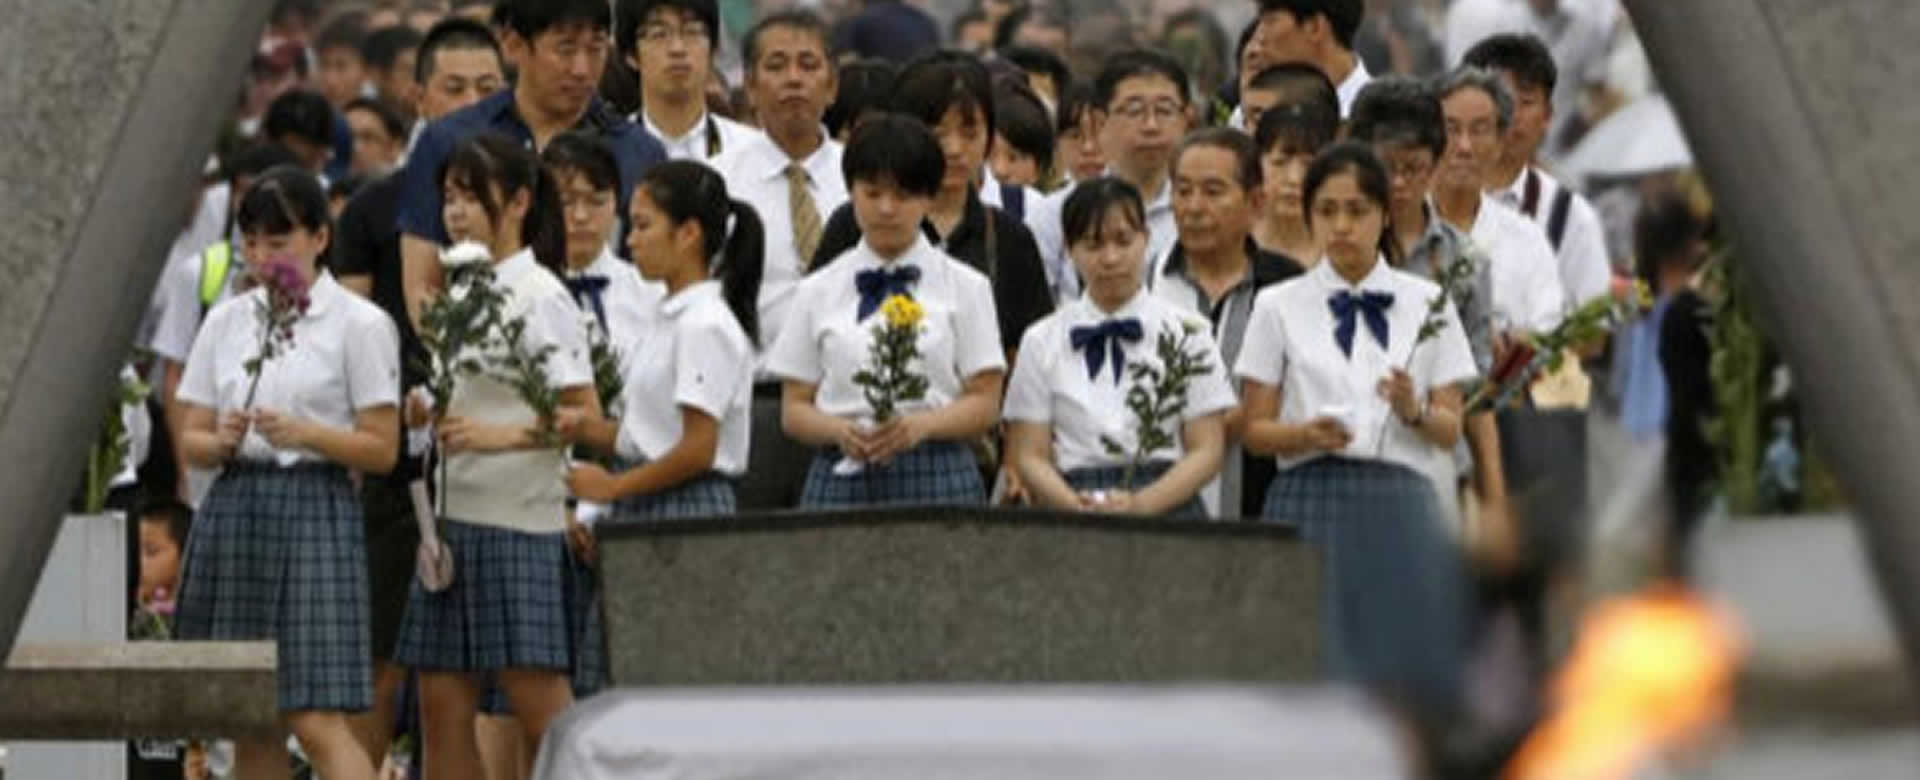 Hiroshima conmemora 74 aniversario del lanzamiento bomba atómica